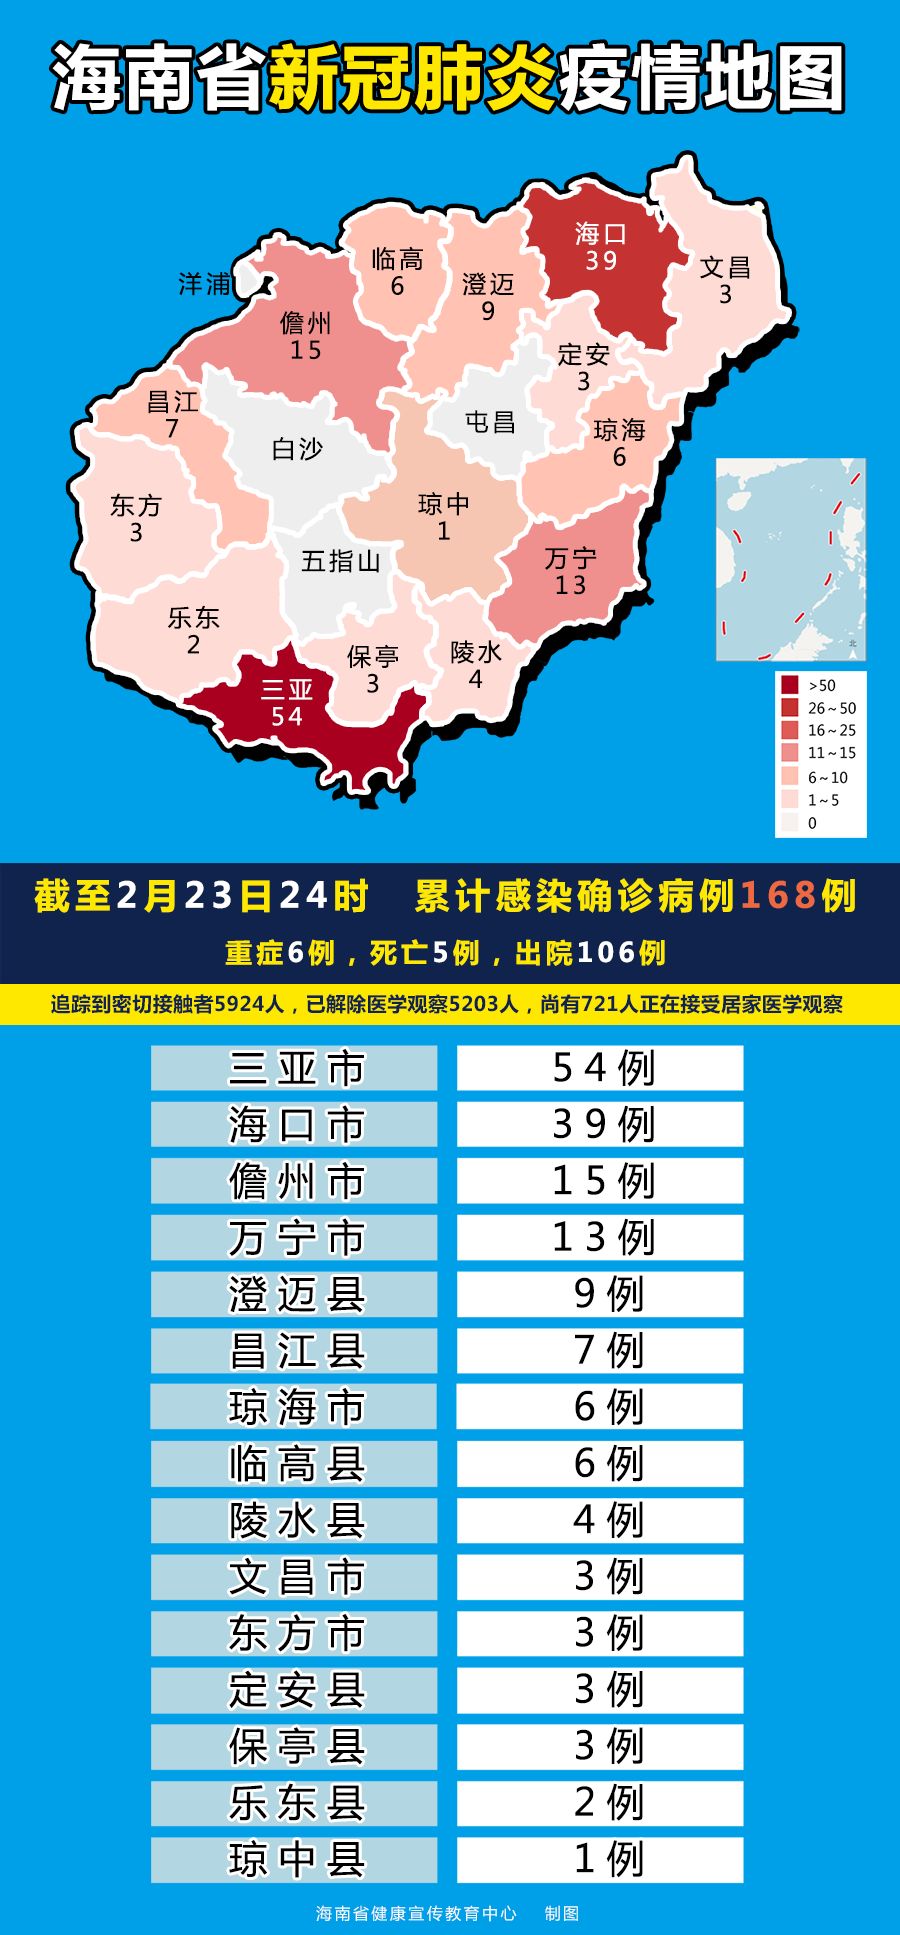 截至2月23日24时,海南省累计报告新型冠状病毒肺炎确诊病例168例,重症